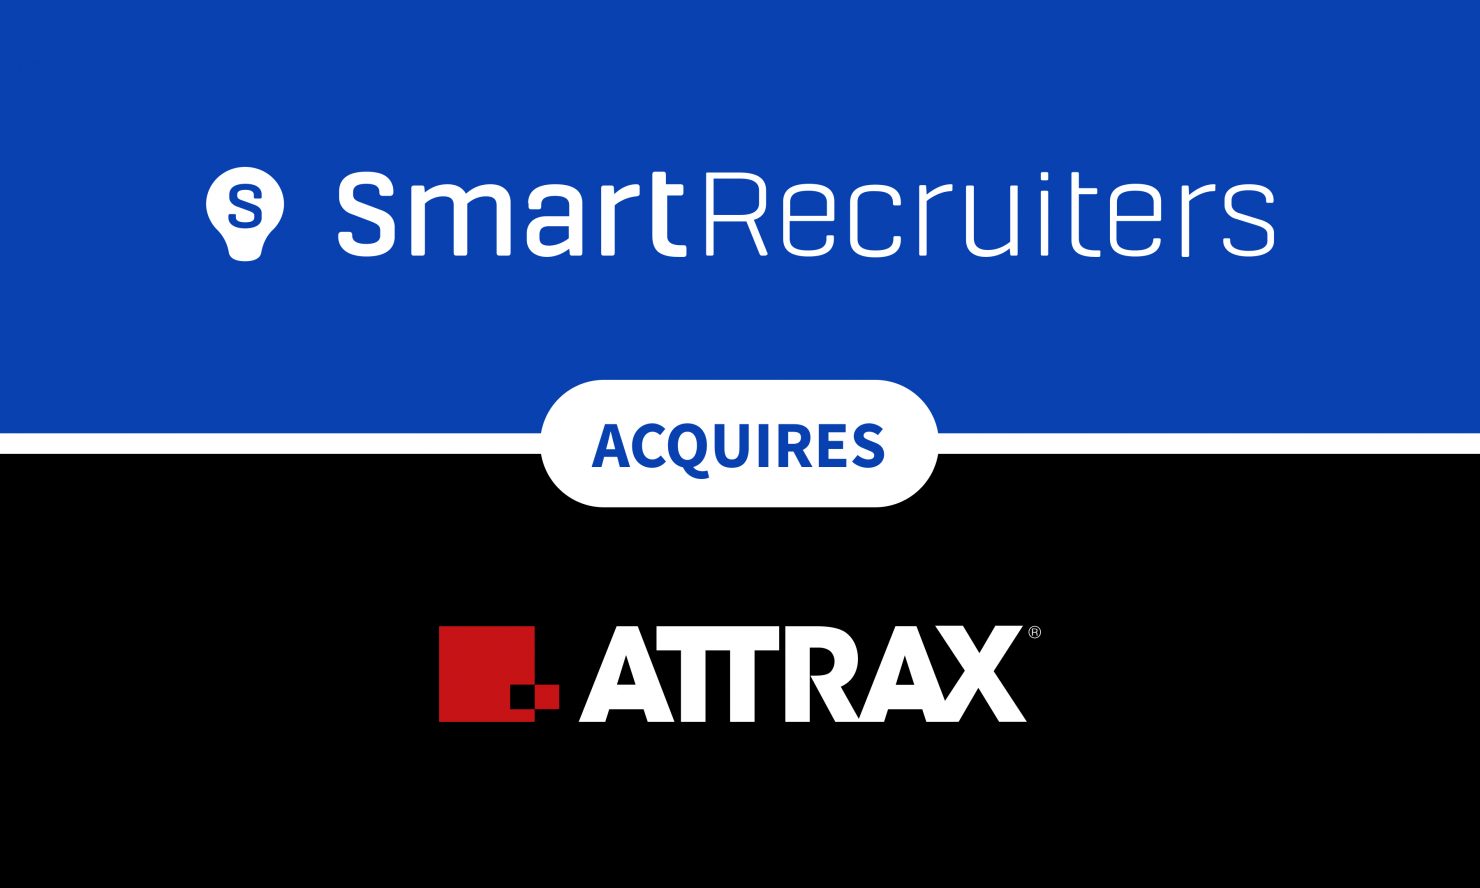 SmartRecruiters Attrax